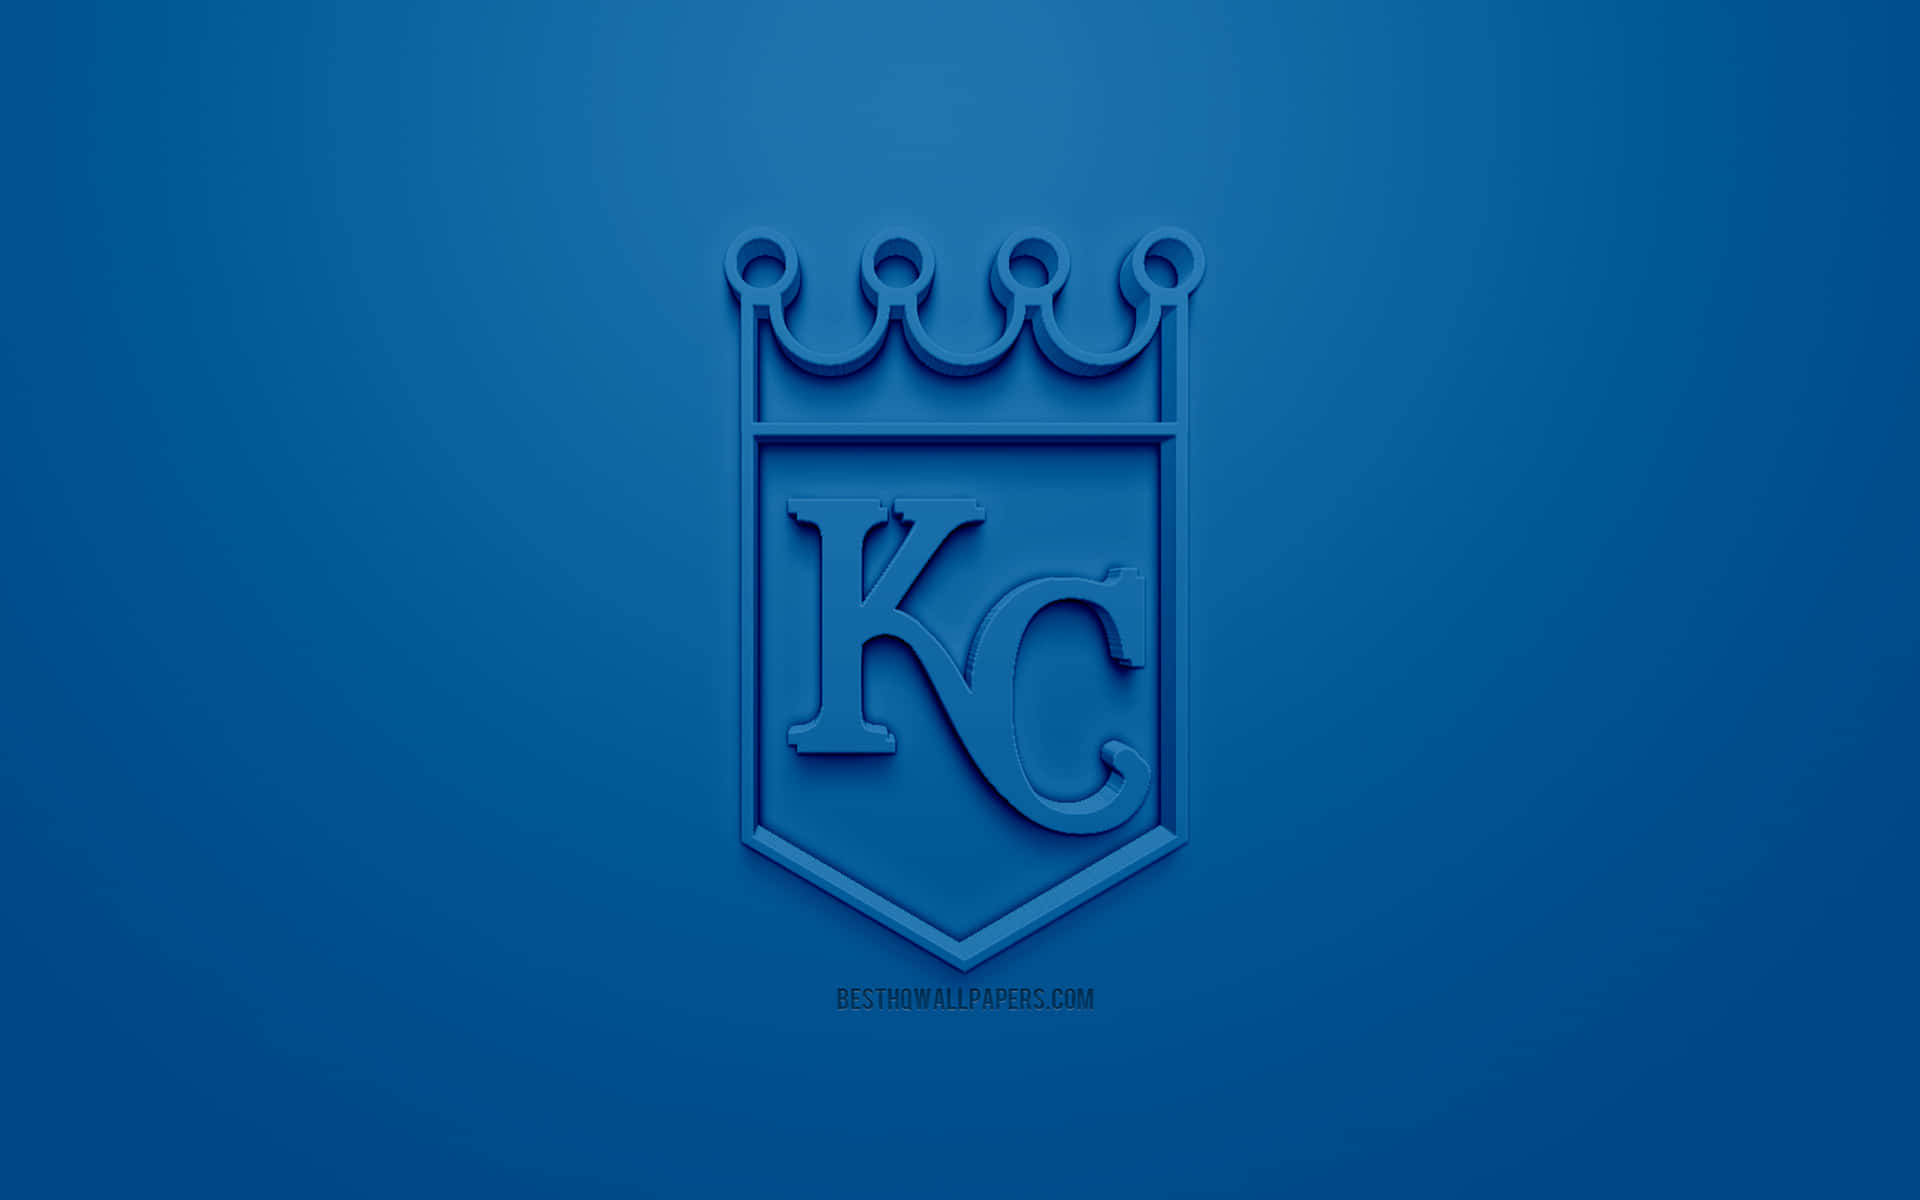 Kc Royals 2560 X 1600 Wallpaper